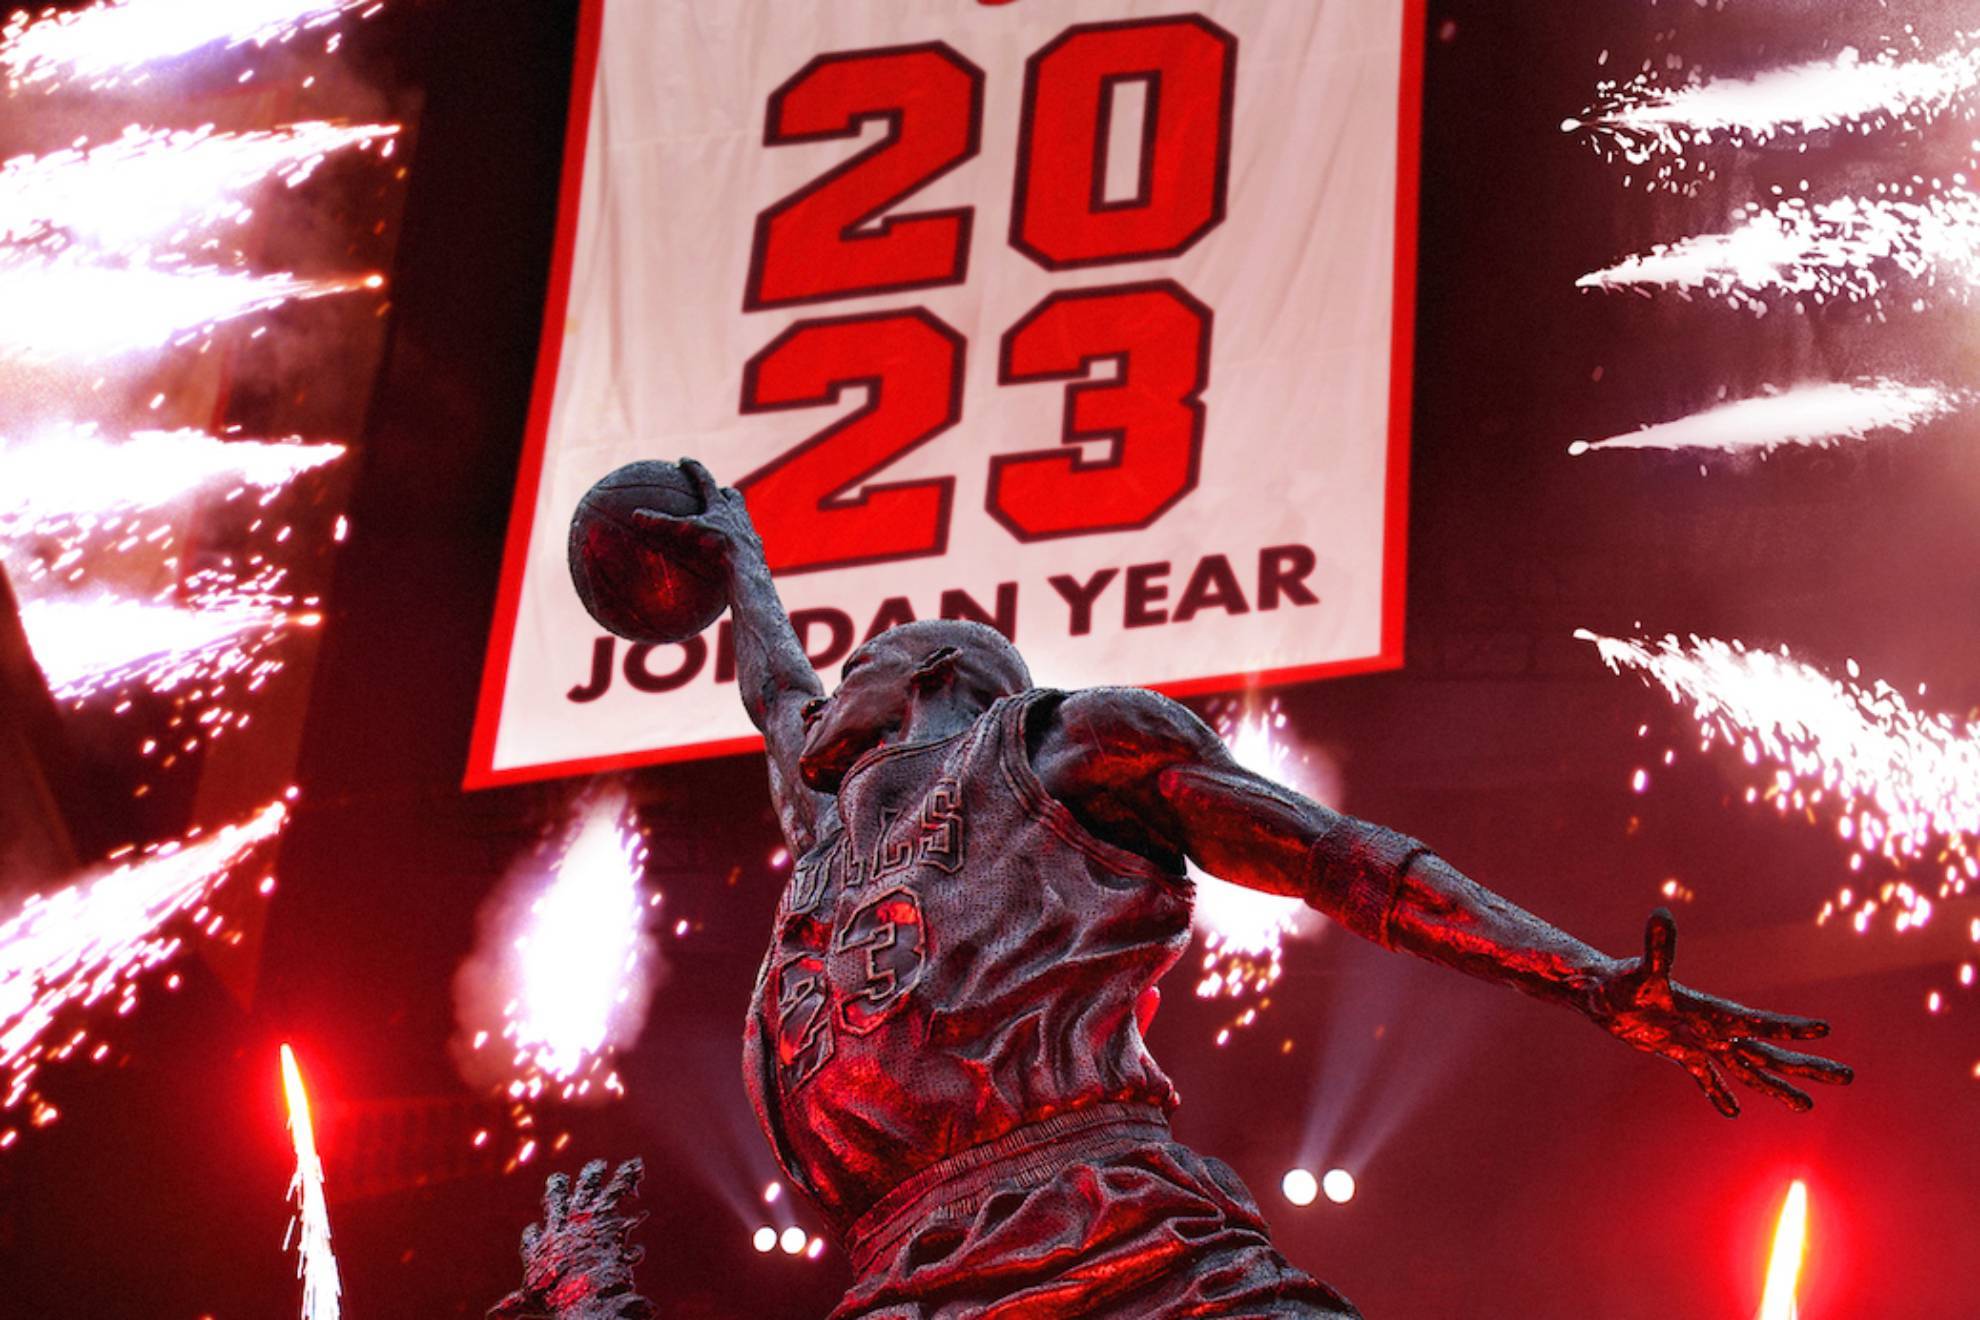 2023 ya ha sido bautizado por muchos usuarios de las redes sociales como 'El Año de Jordan'. ¿Por qué? Por el número de Michael Jordan.